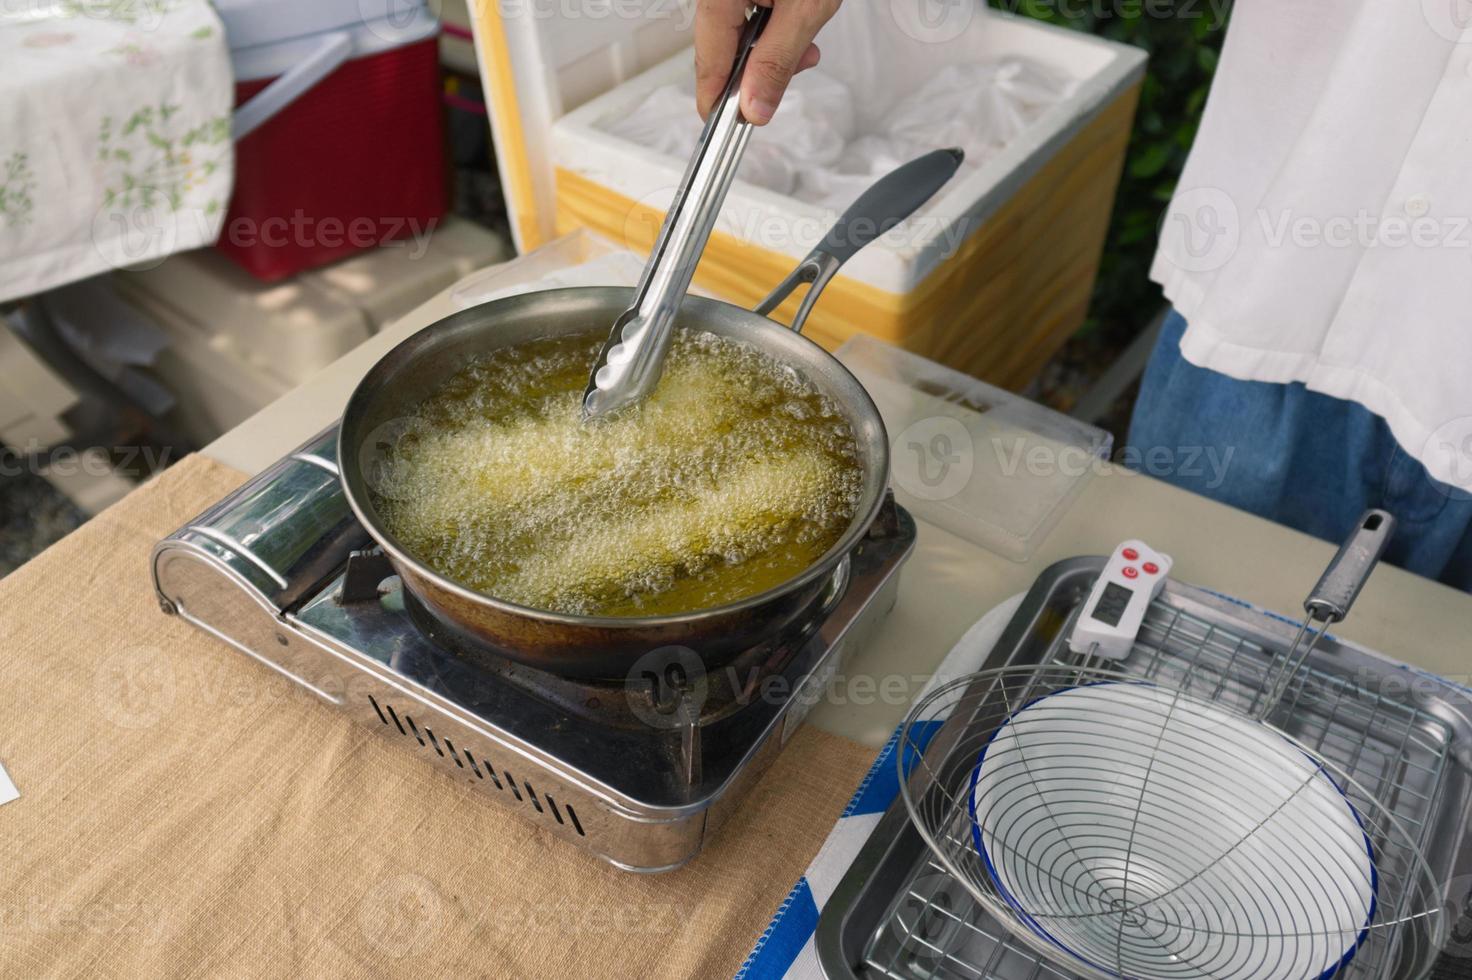 churros worden gebakken in kokende olie in een koekenpan. concept koken achtergrond. foto